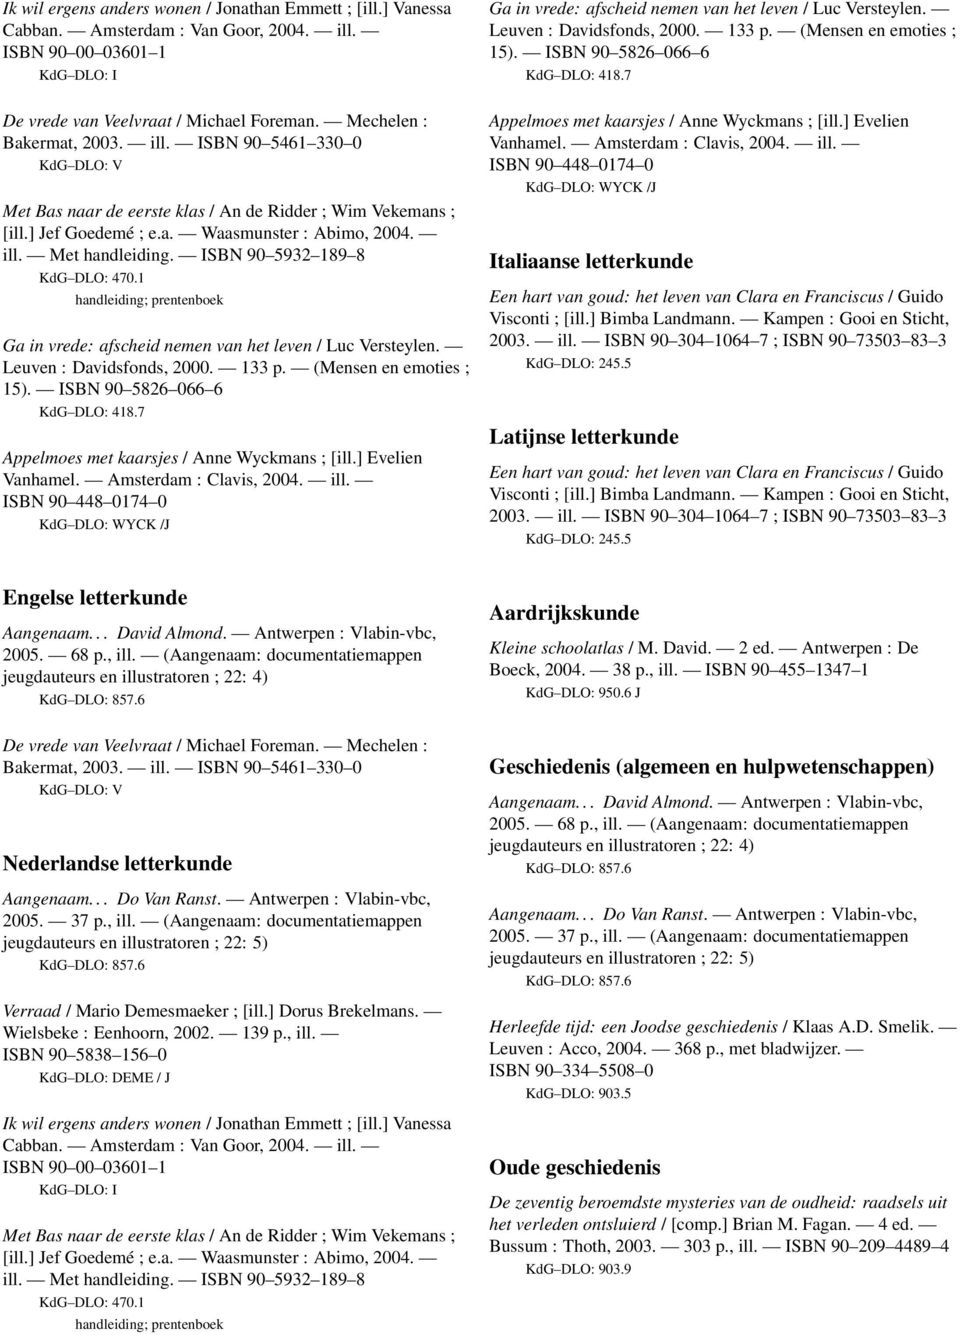 David. 2 ed. Antwerpen : De Boeck, 2004. 38 p., ill. ISBN 90 455 1347 1 KdG DLO: 950.6 J Geschiedenis (algemeen en hulpwetenschappen) Herleefde tijd: een Joodse geschiedenis / Klaas A.D. Smelik.